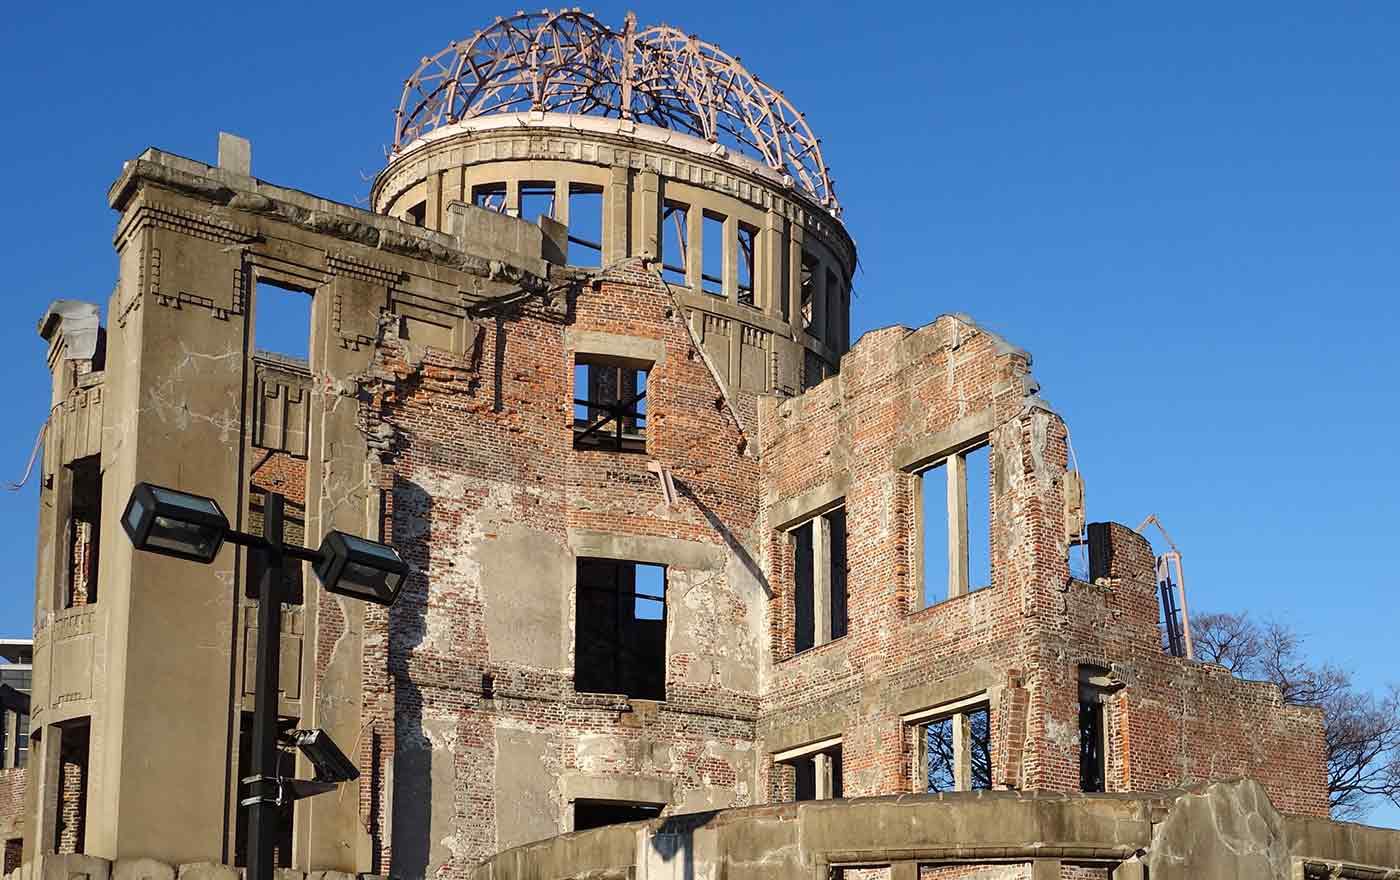 Das Friedensdenkmal in Hiroshima. Das Gebäude wurde am 6. August 1945 durch die abgeworfene US-amerikanische Atombombe zerstört und brannte völlig aus. Foto: wikimedia/oilstreet